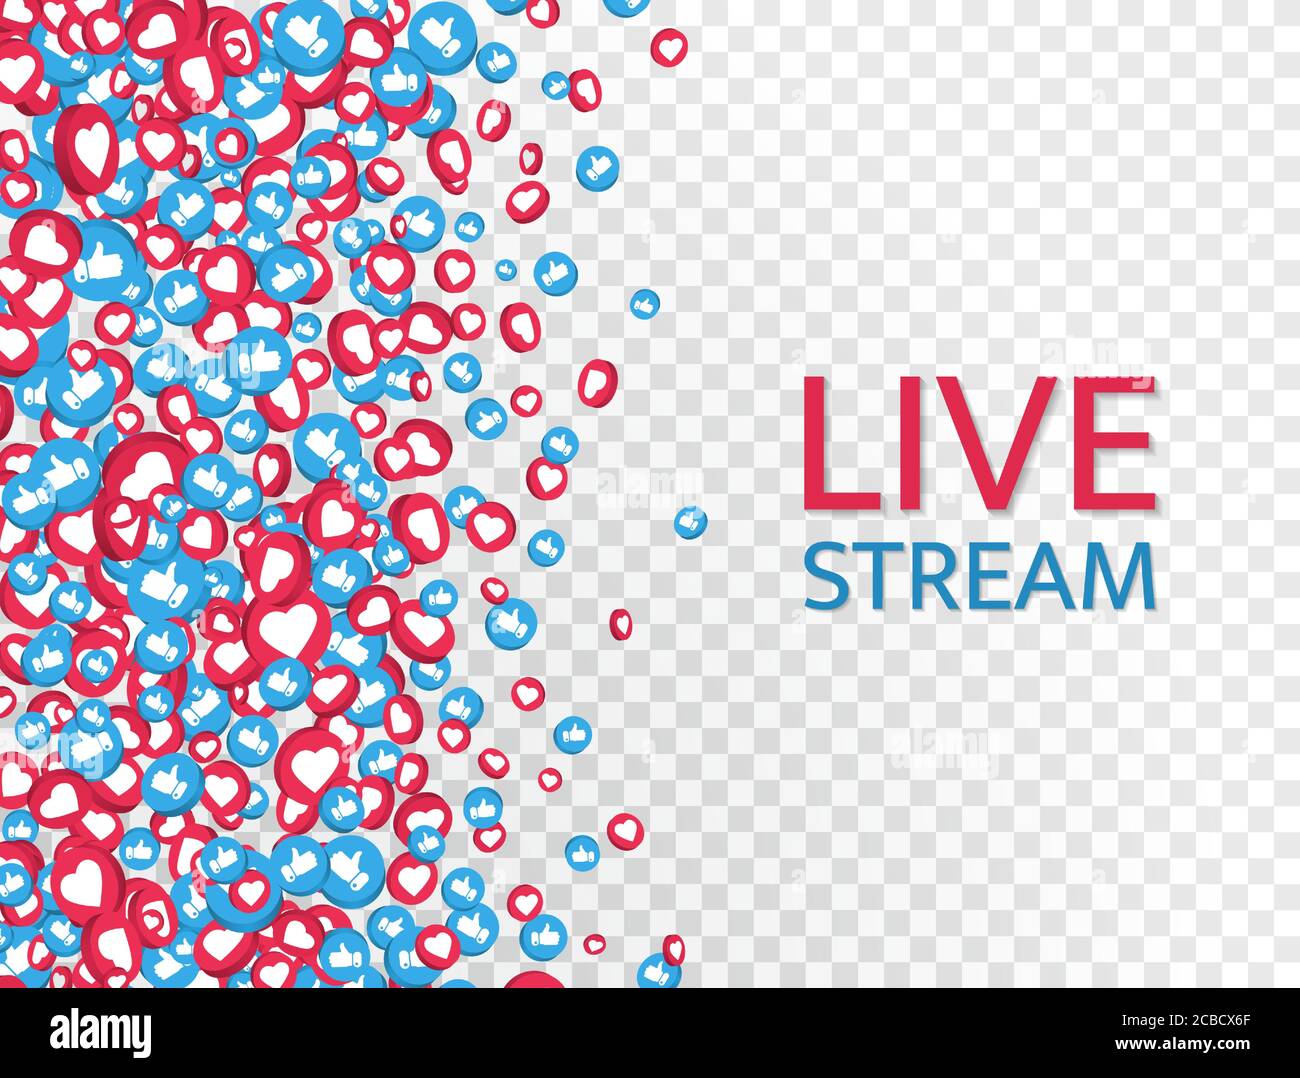 Cập nhật chất lượng với nền livestream đẹp mắt, giúp cho video của bạn thêm phần chuyên nghiệp và thu hút sự chú ý của người xem. Thỏa sức sáng tạo và phát triển kênh trực tuyến của bạn với Live stream background.